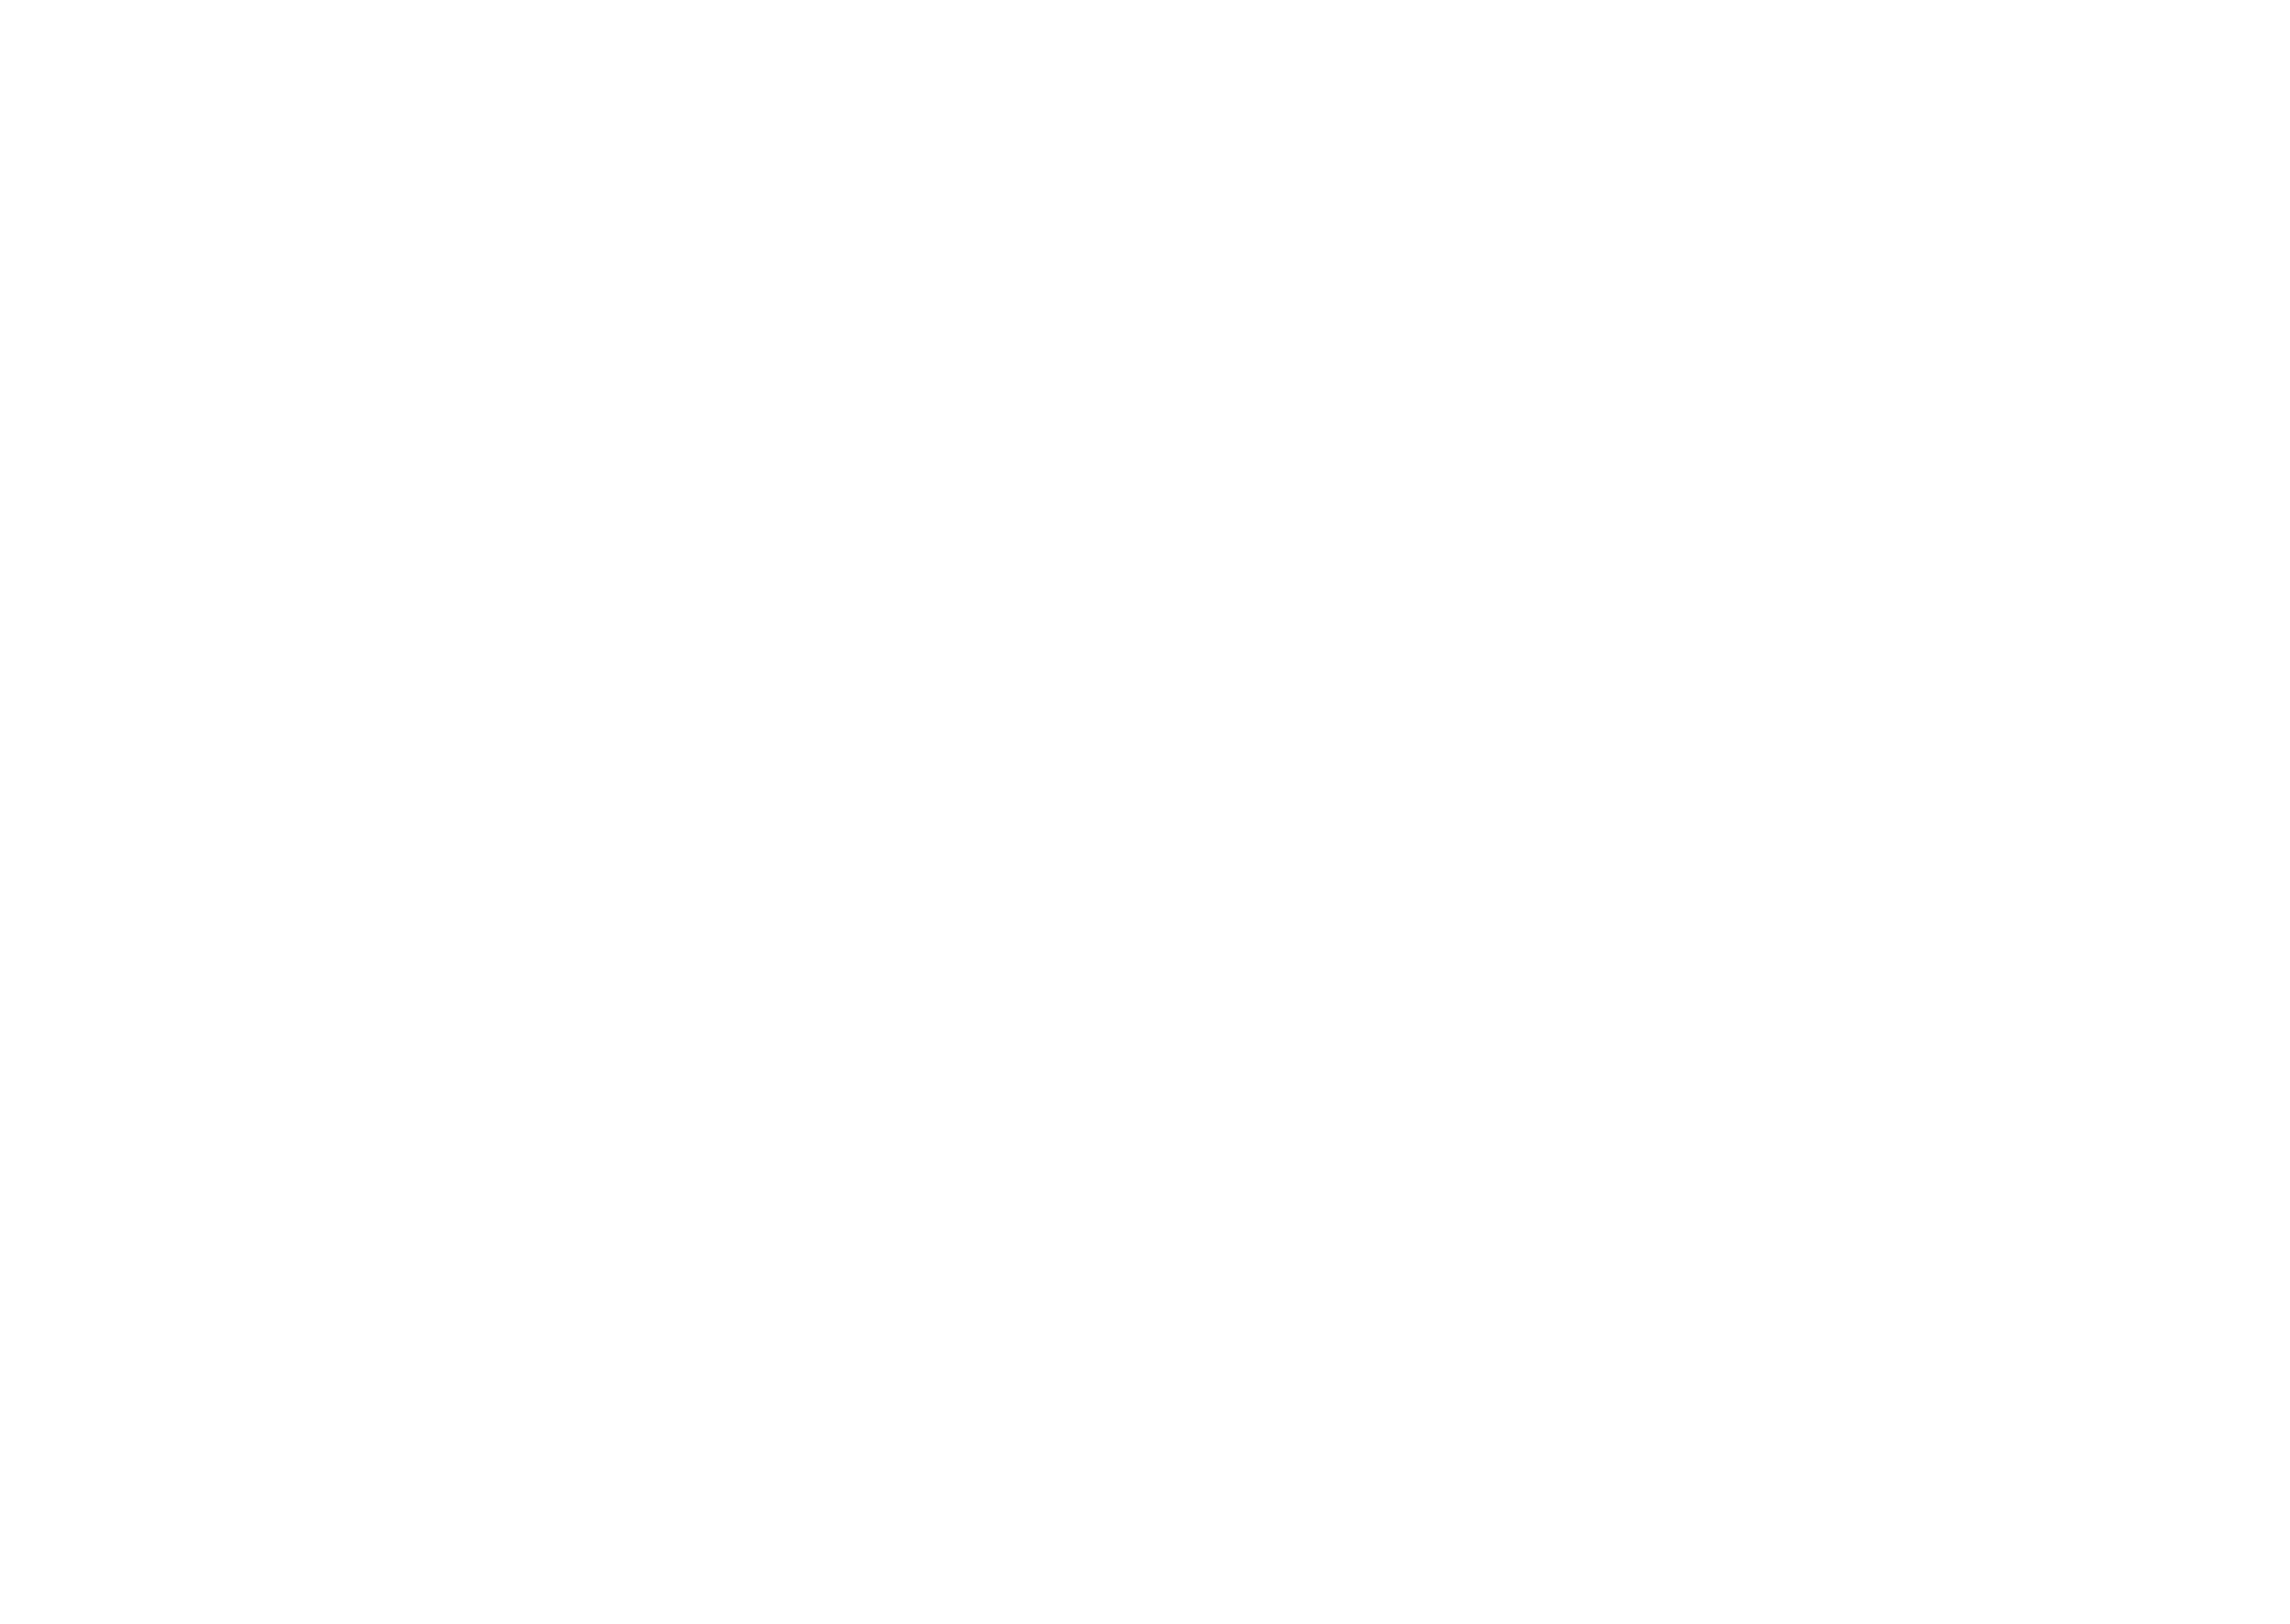 La Fenice costruzioni - Deluxe Renovation